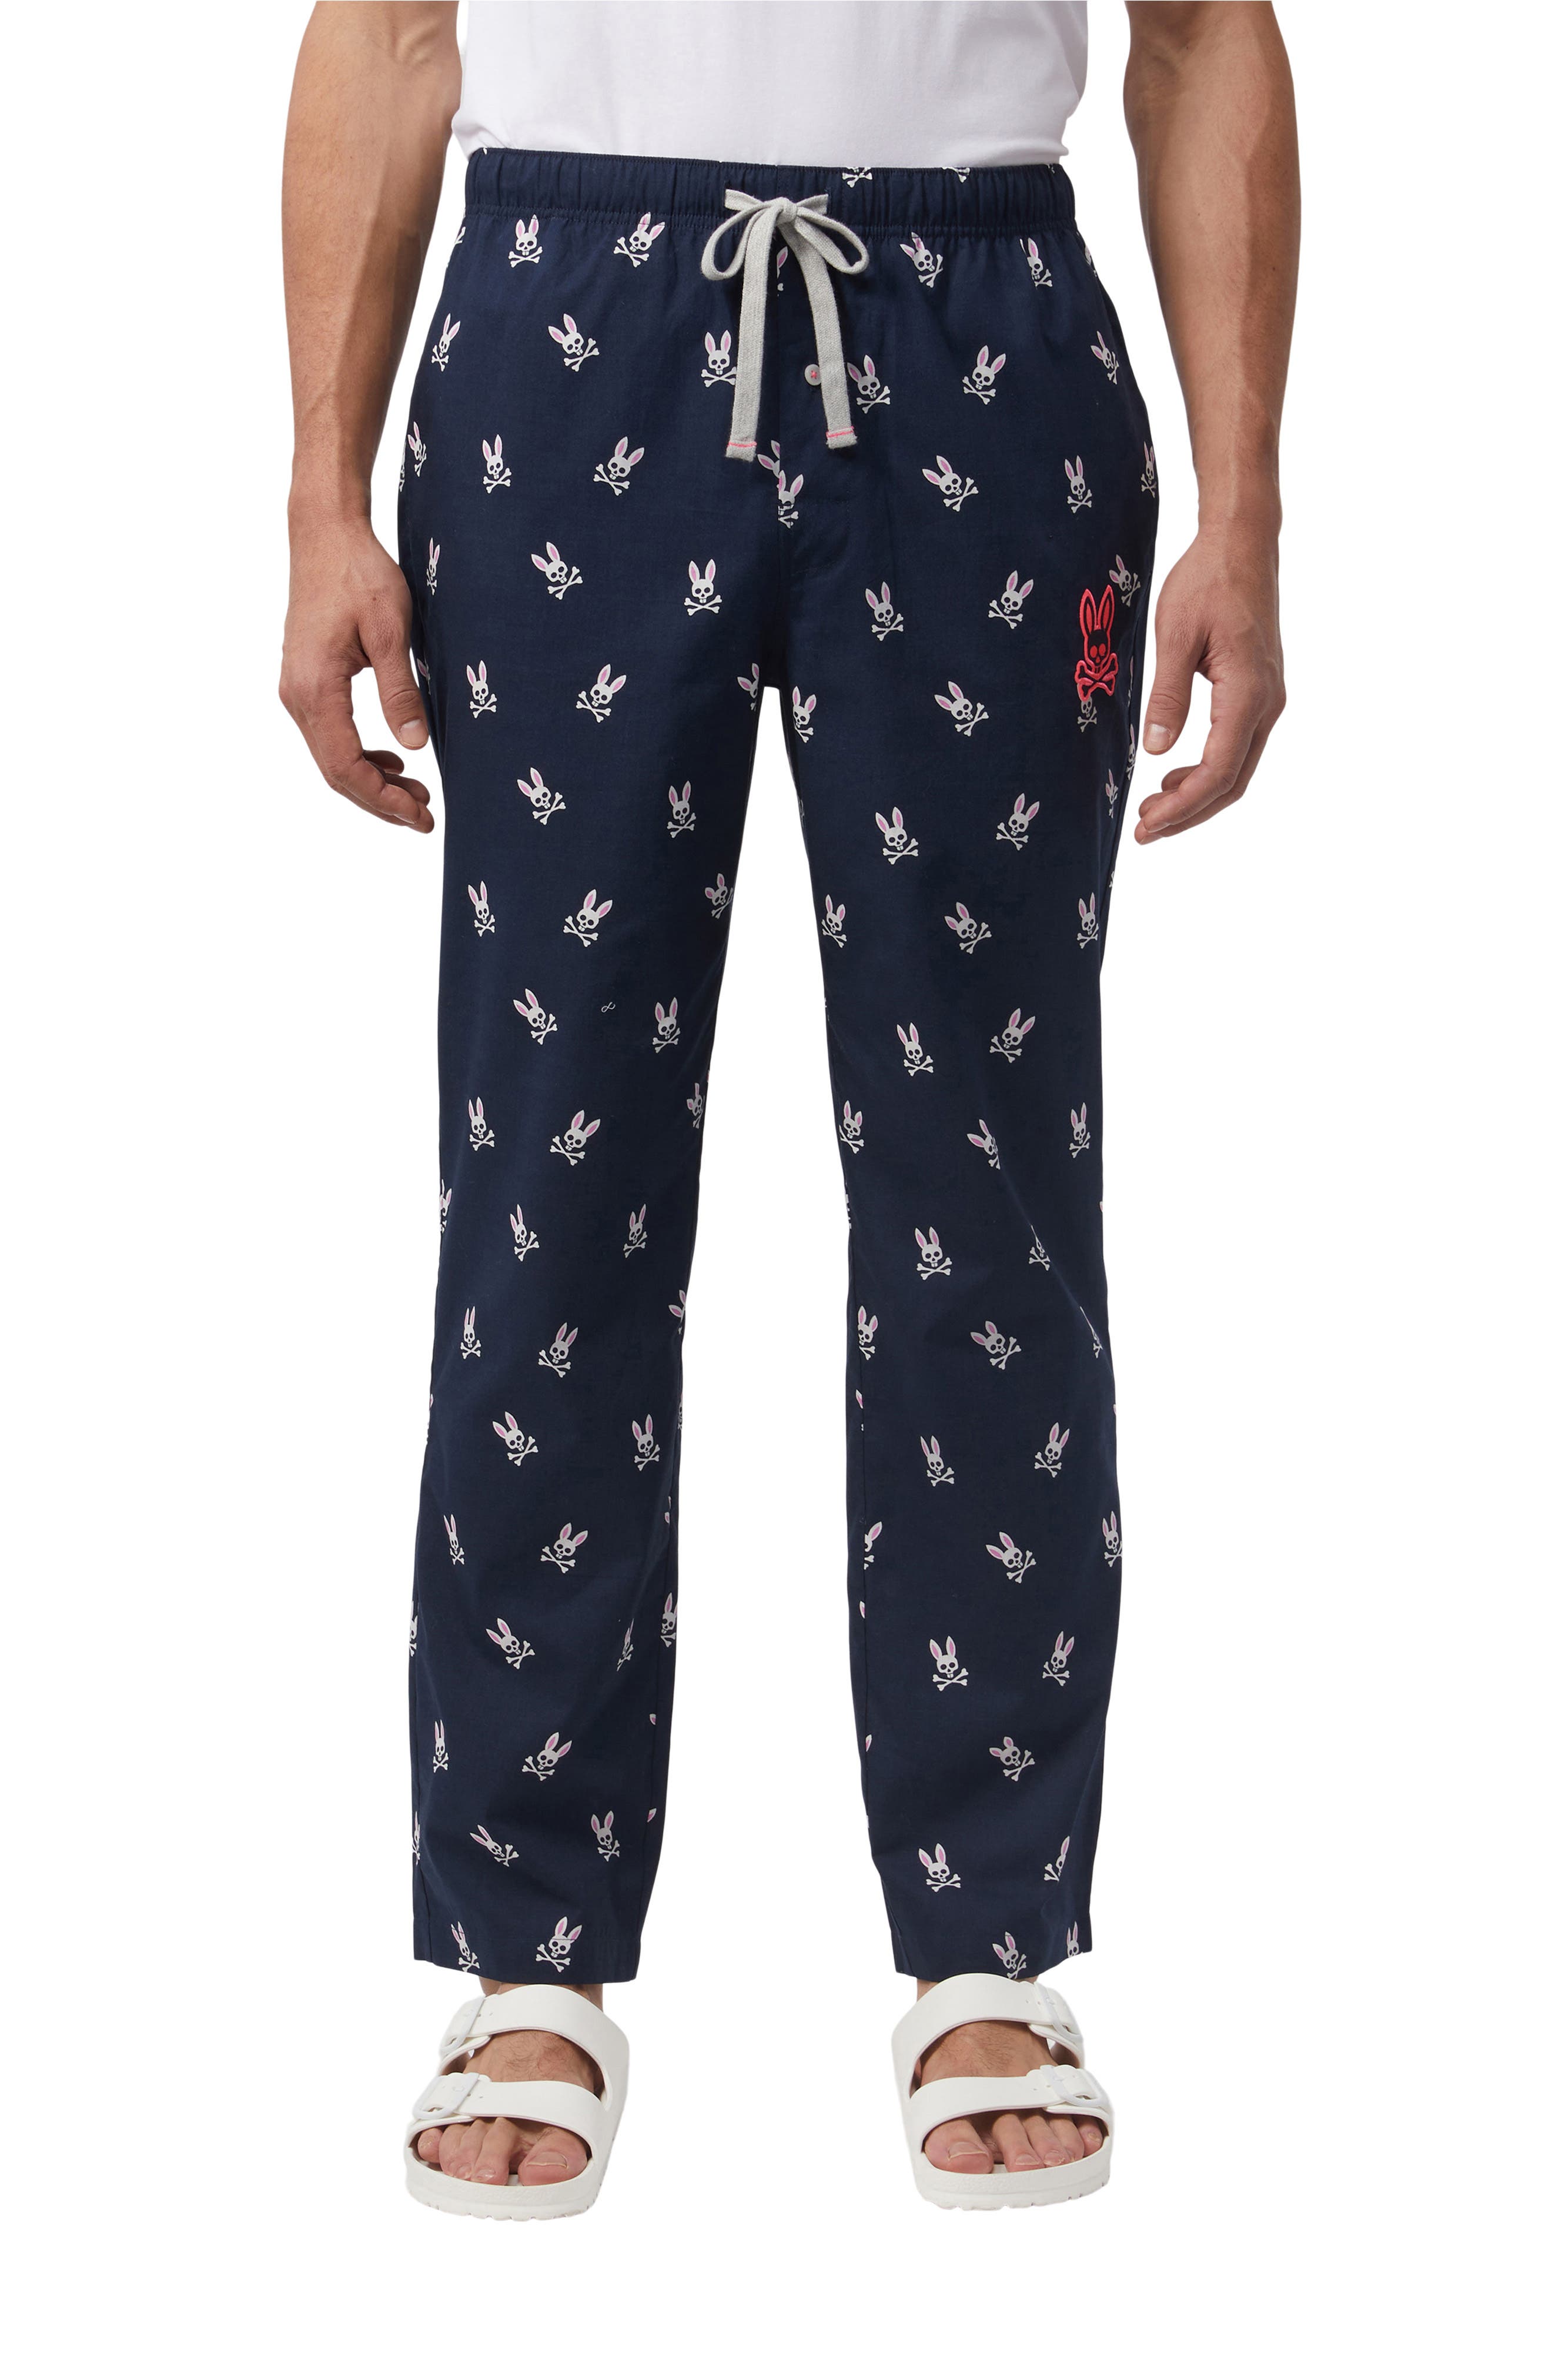 Mens Stripe Pajama Pants in Navy at Nordstrom Nordstrom Men Clothing Loungewear Pajamas 